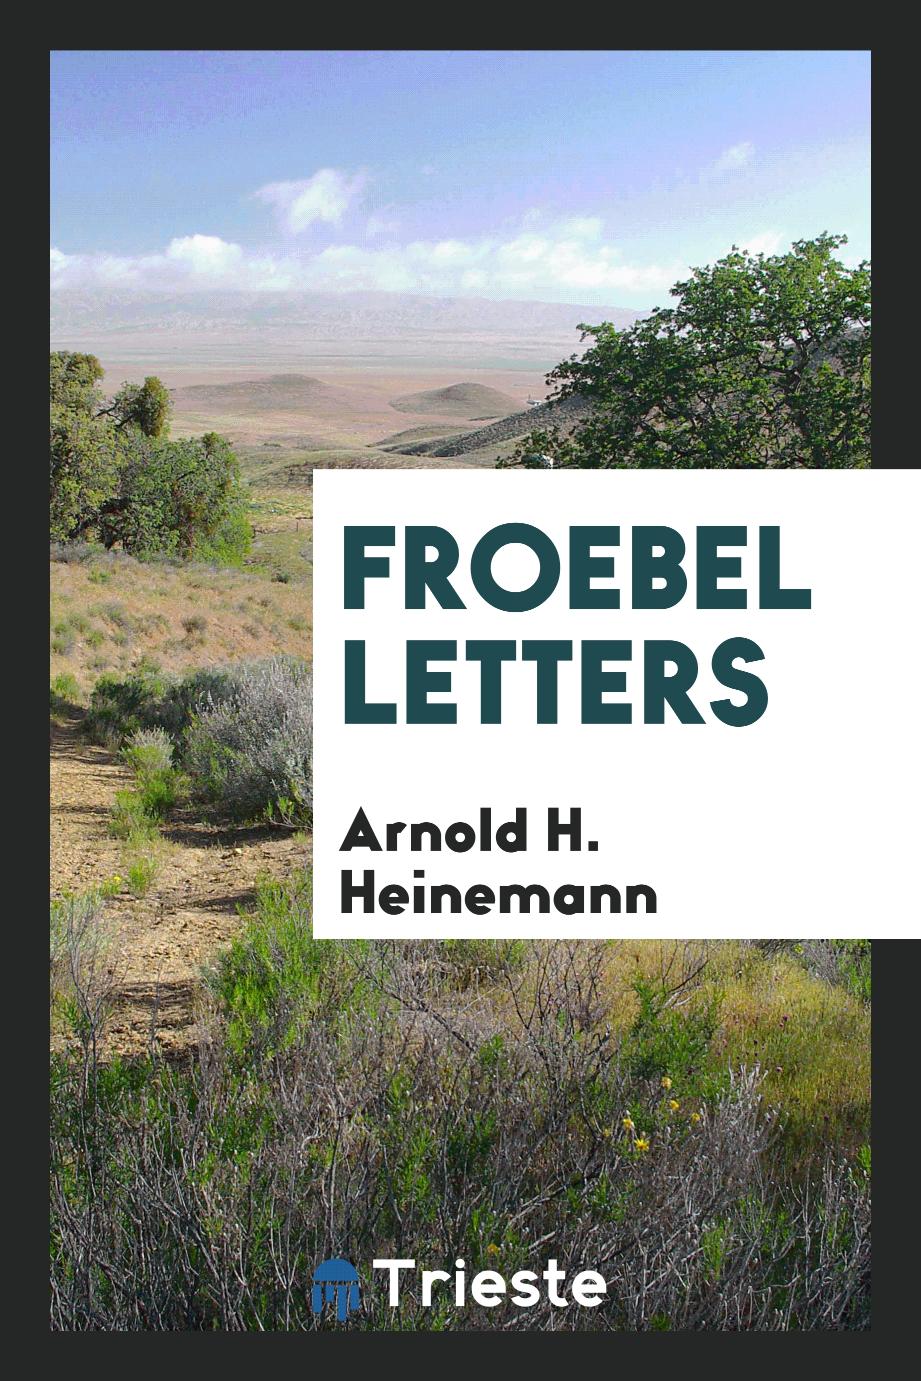 Froebel letters